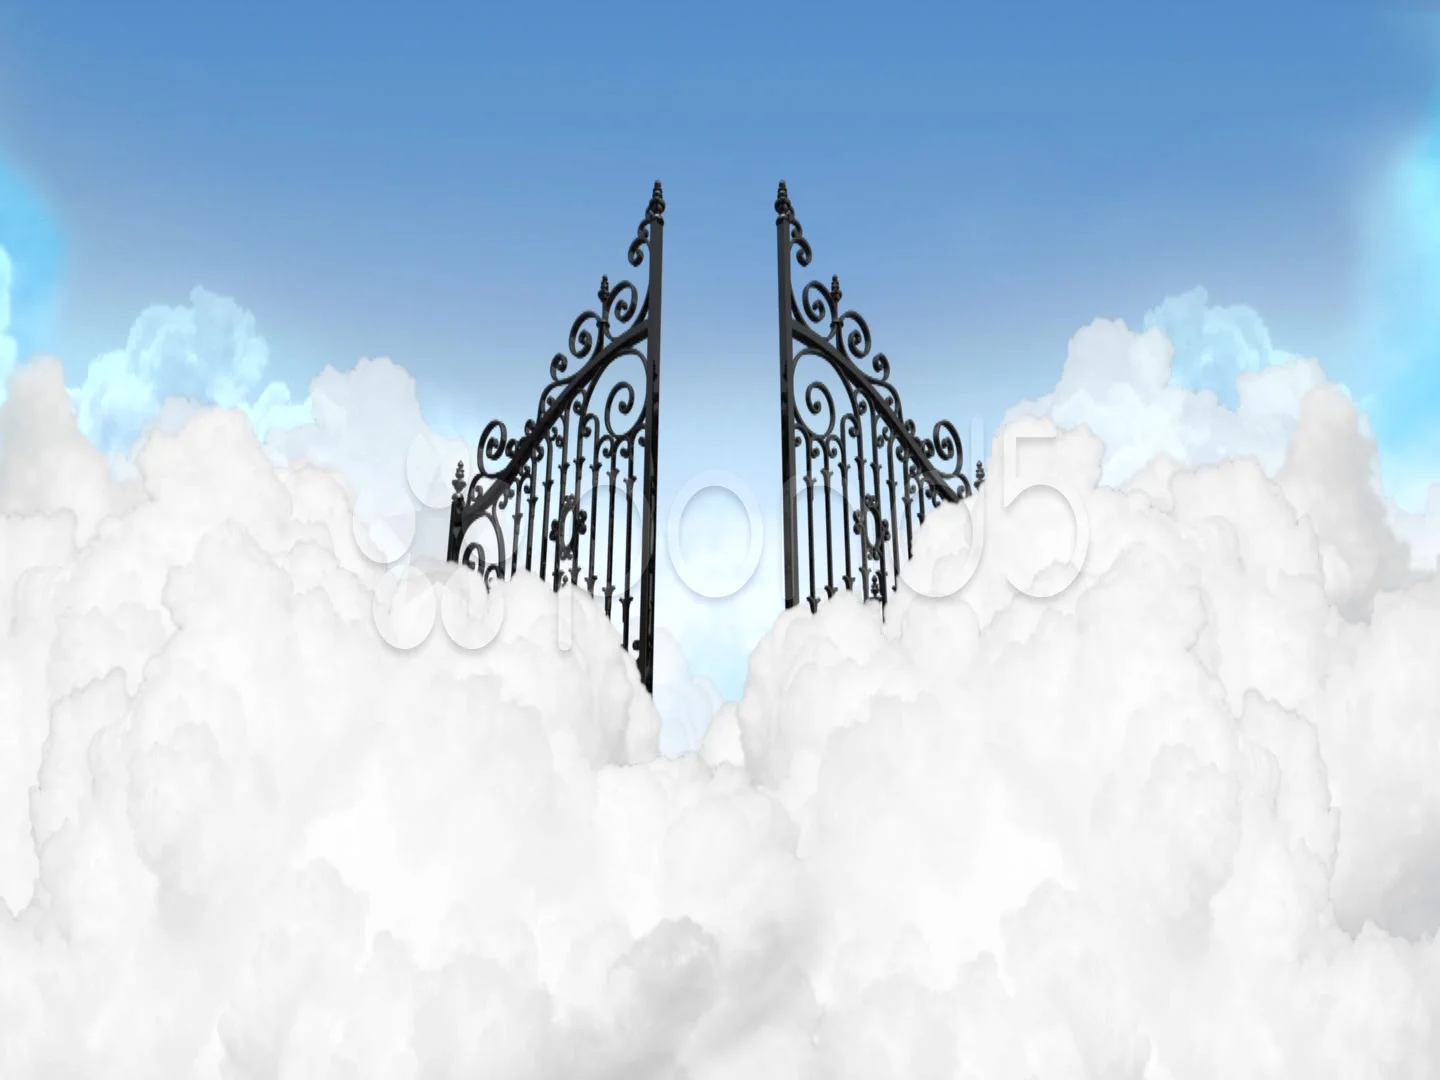 heaven open gate